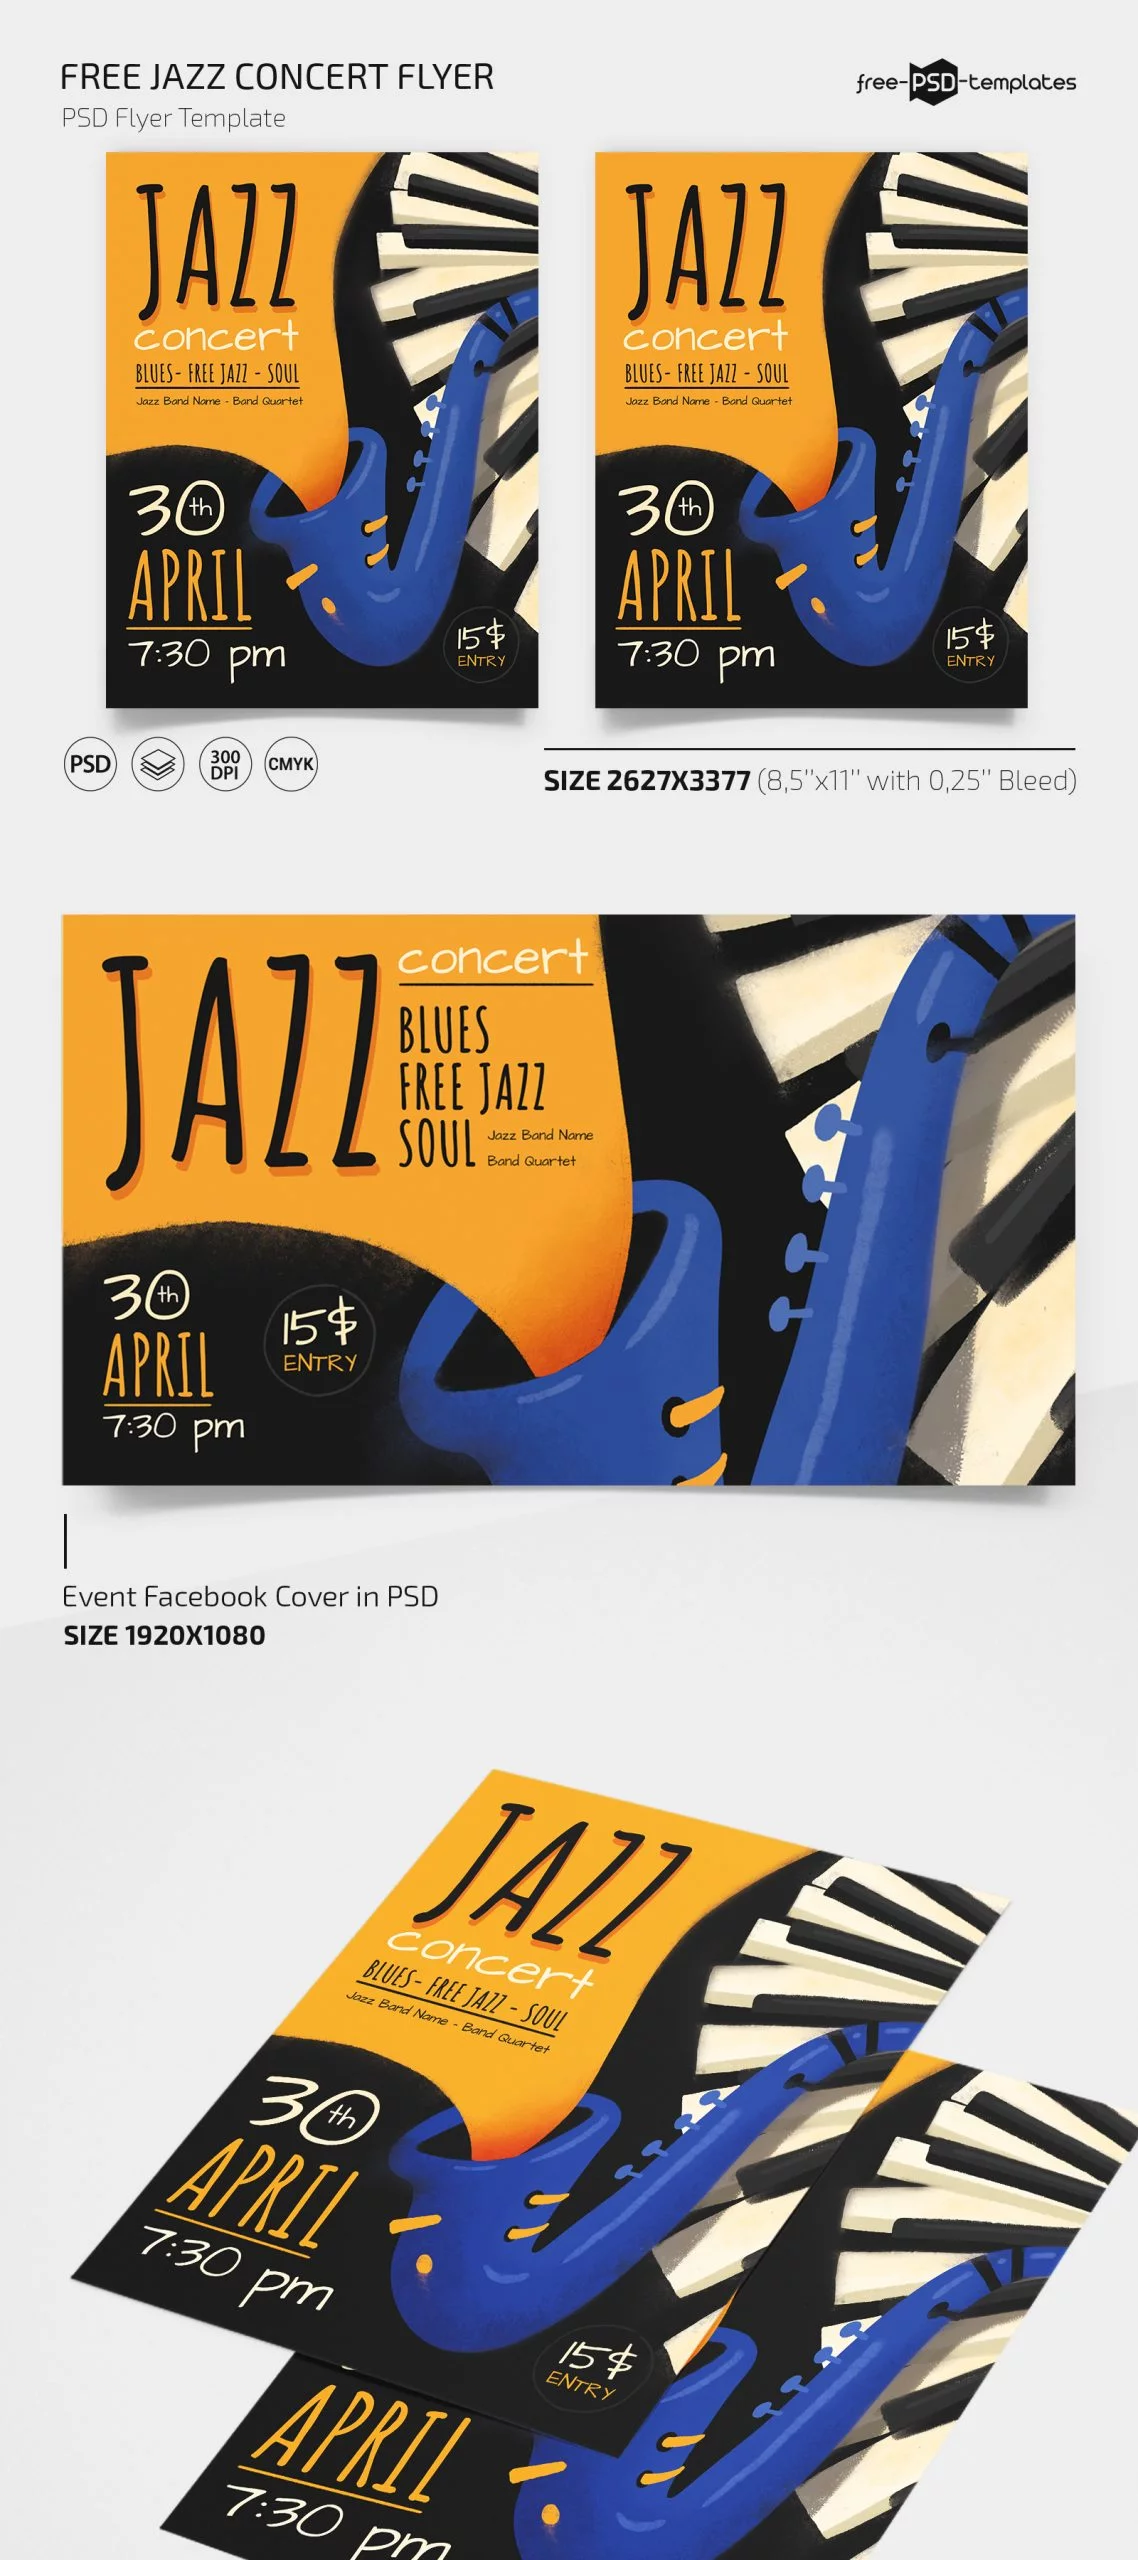 Free Jazz Concert Flyer PSD Template